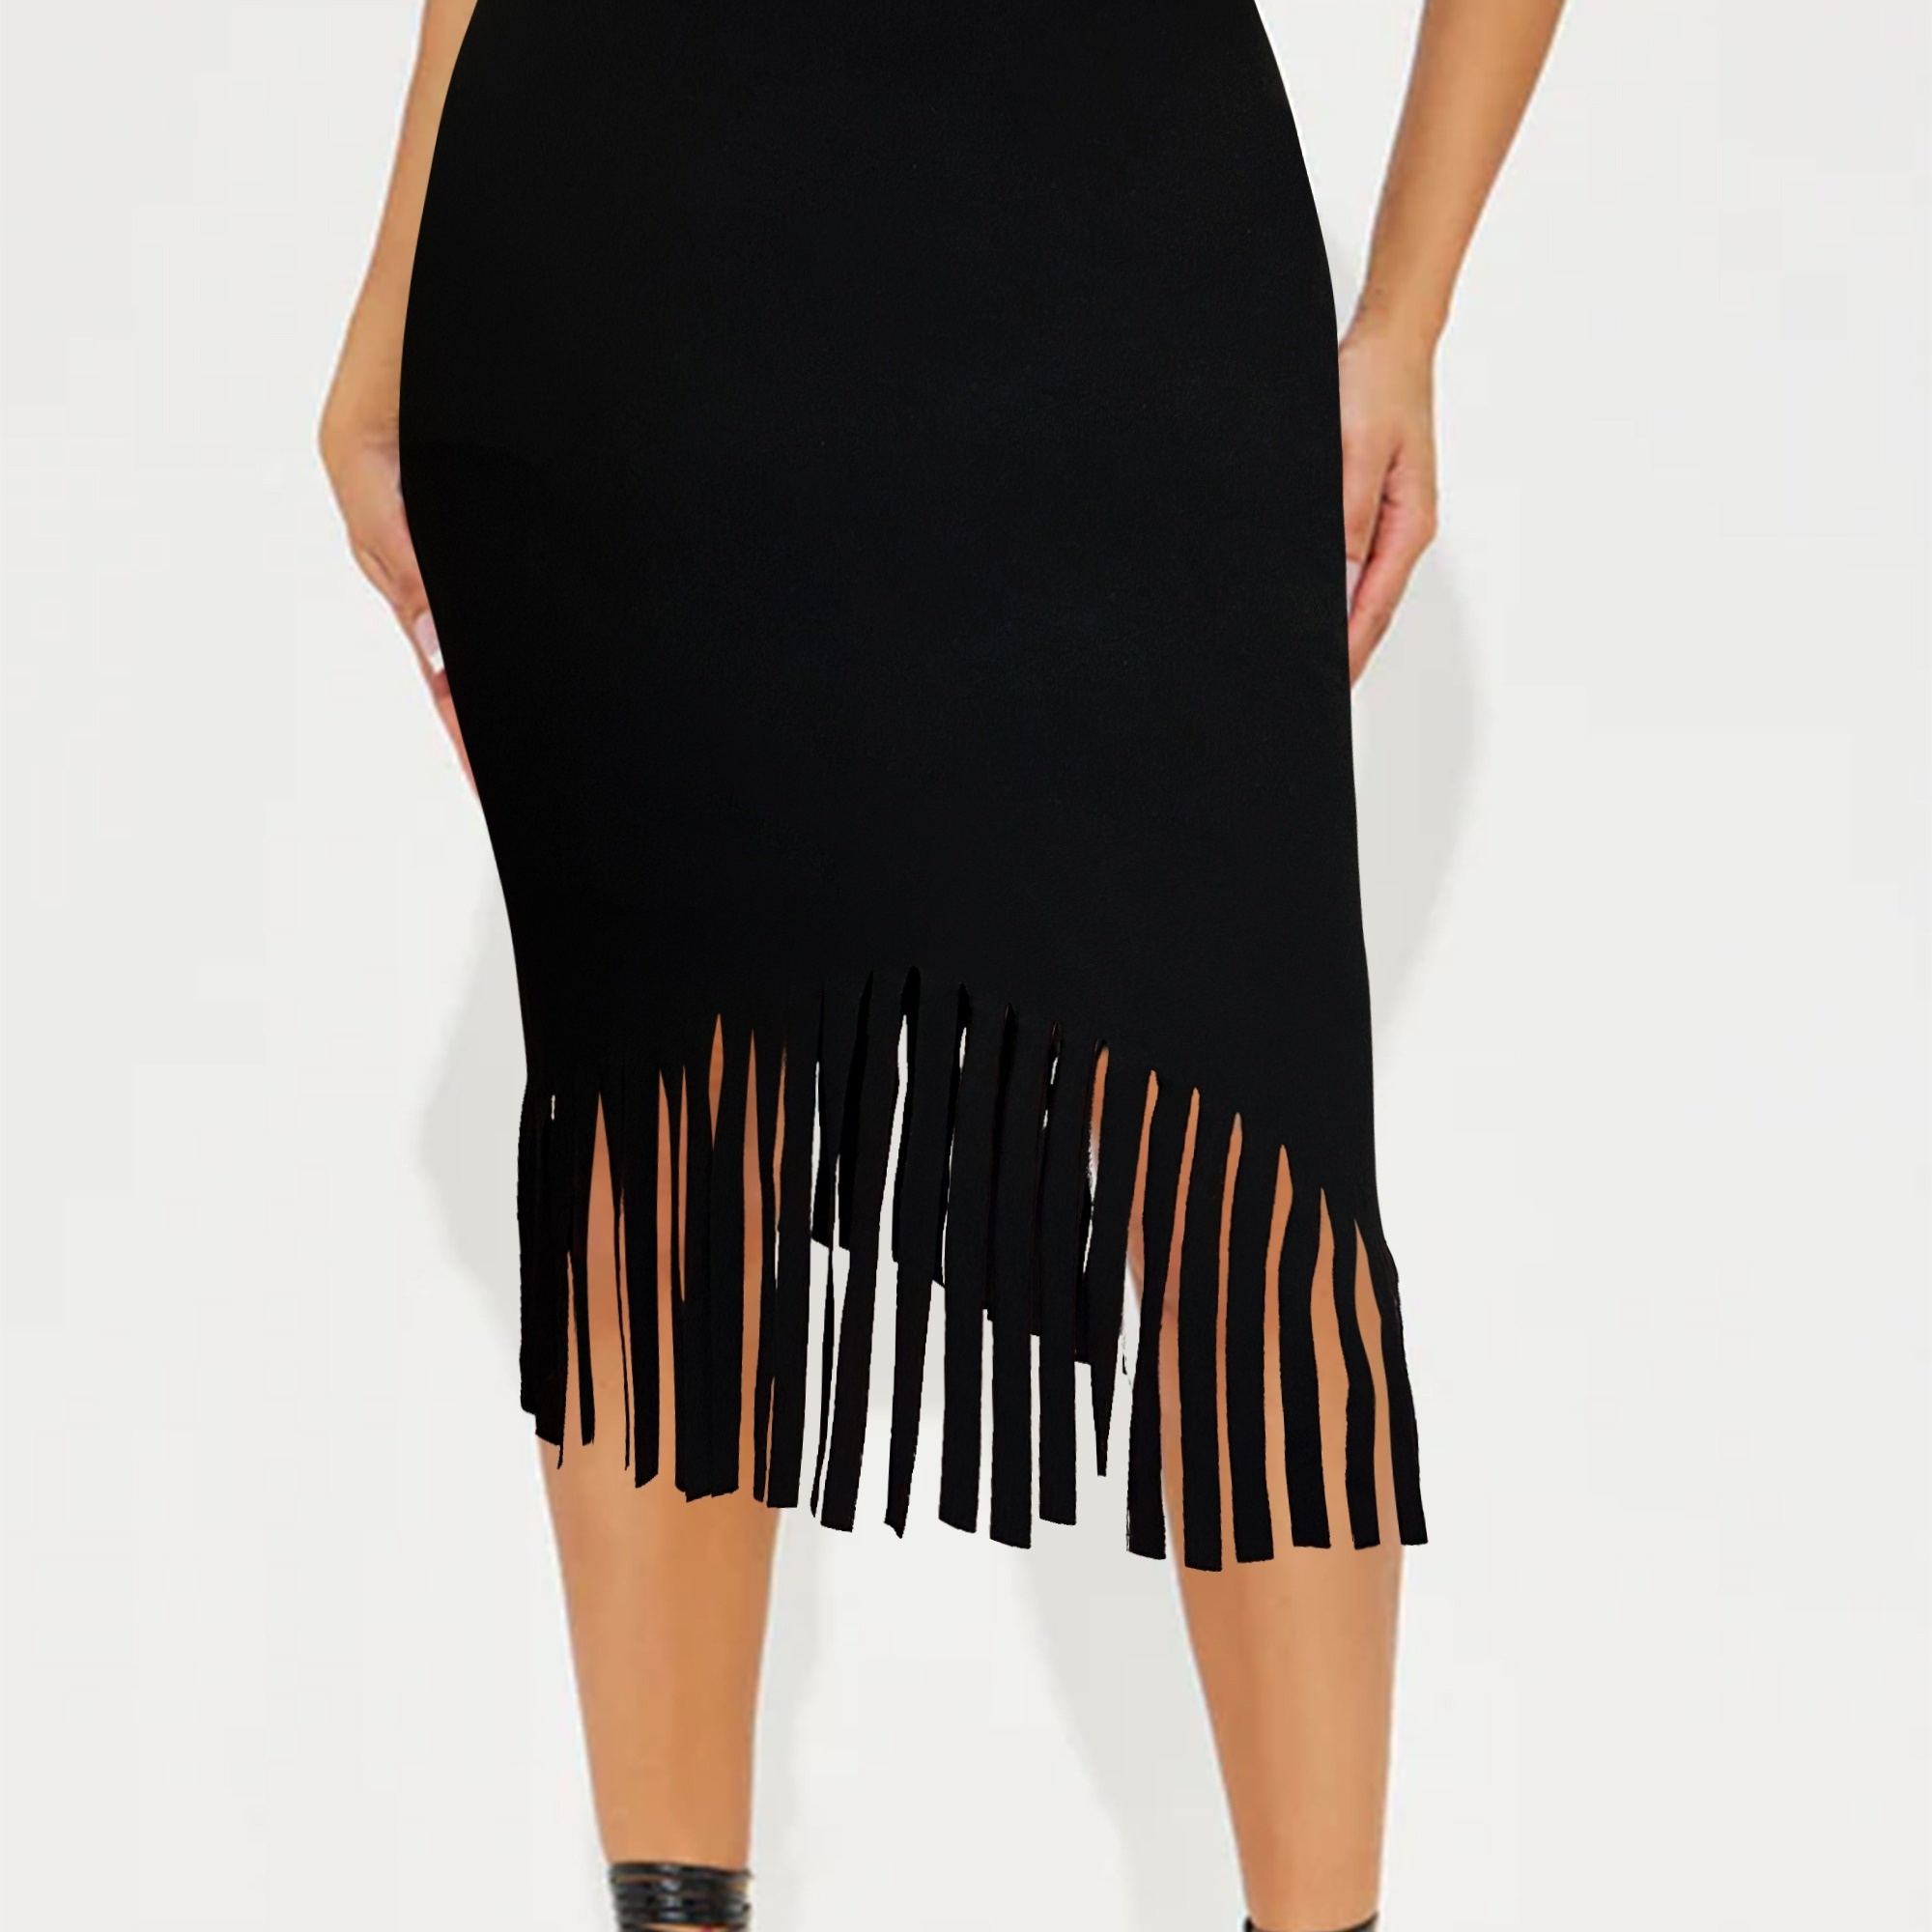 

Fringe Hem Solid Color Skirt, Elegant Bodycon High Waist Skirt For Spring & Summer, Women's Clothing